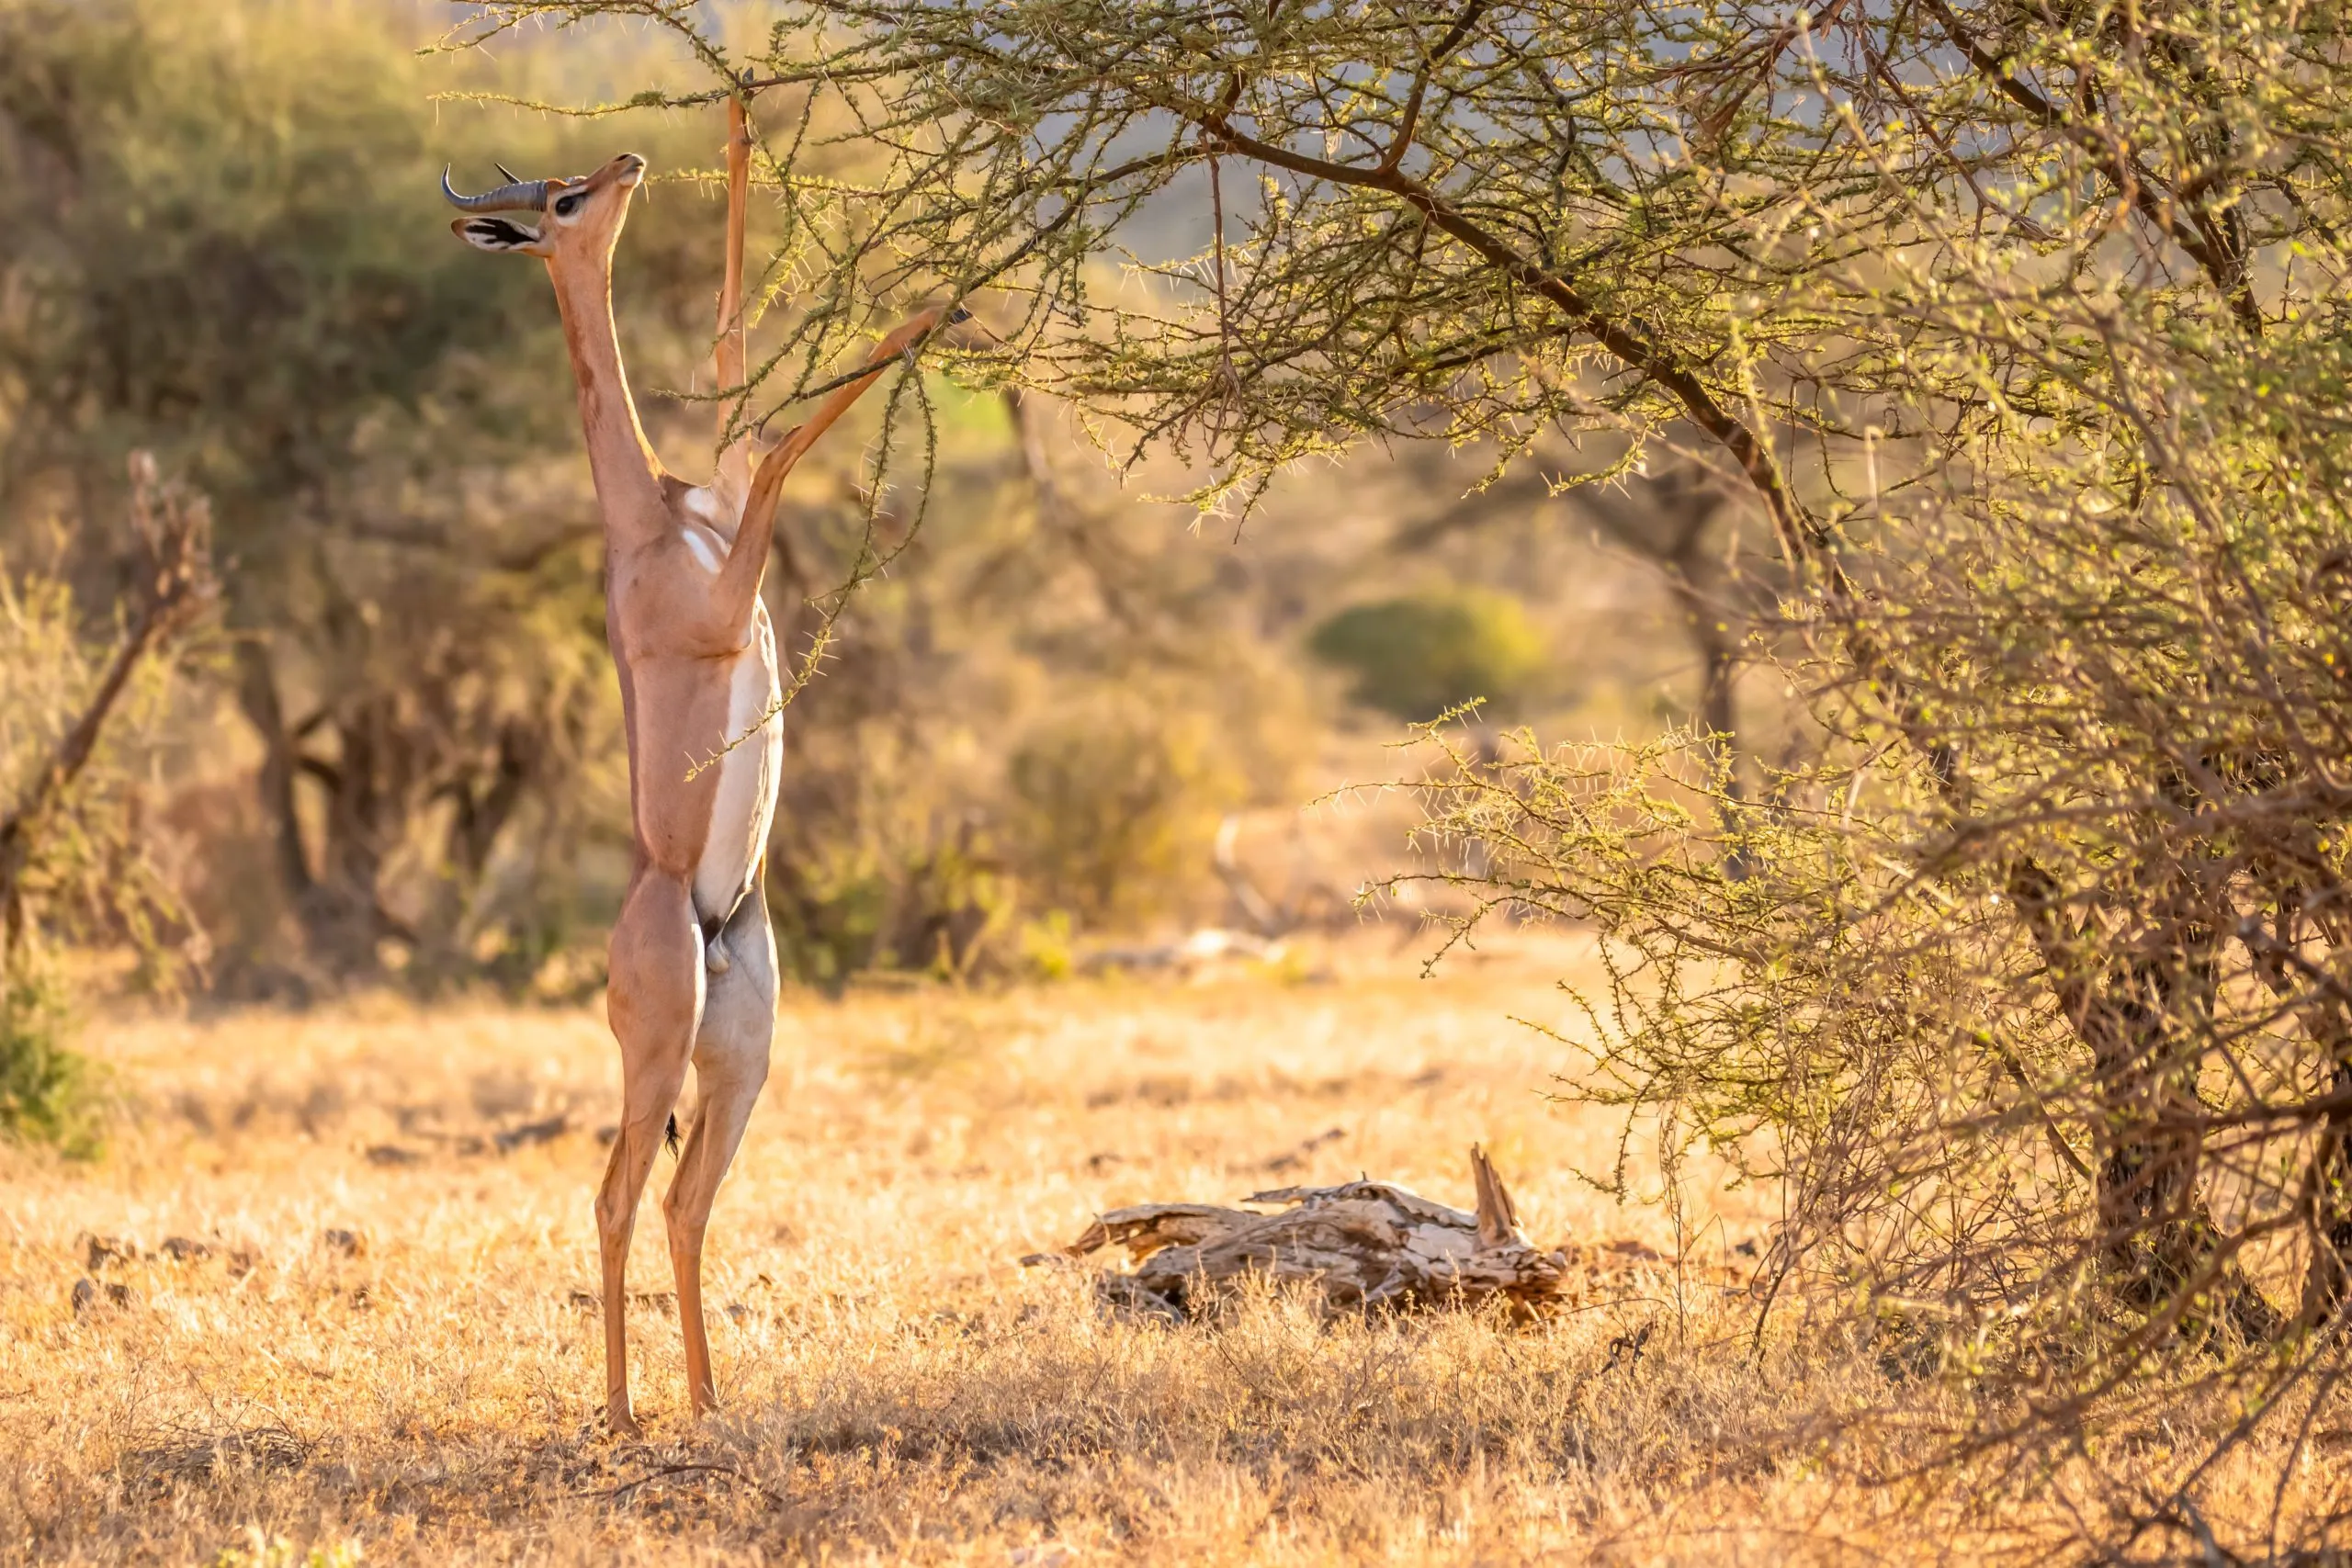 Gerenuk, Litocranius walleri også girafgazelle, langhalset antilope, lang slank hals og lemmer, står på bagbenene under bladfodring. Afrikanske aftenfarver. Samburu Nationalreservat, Kenya